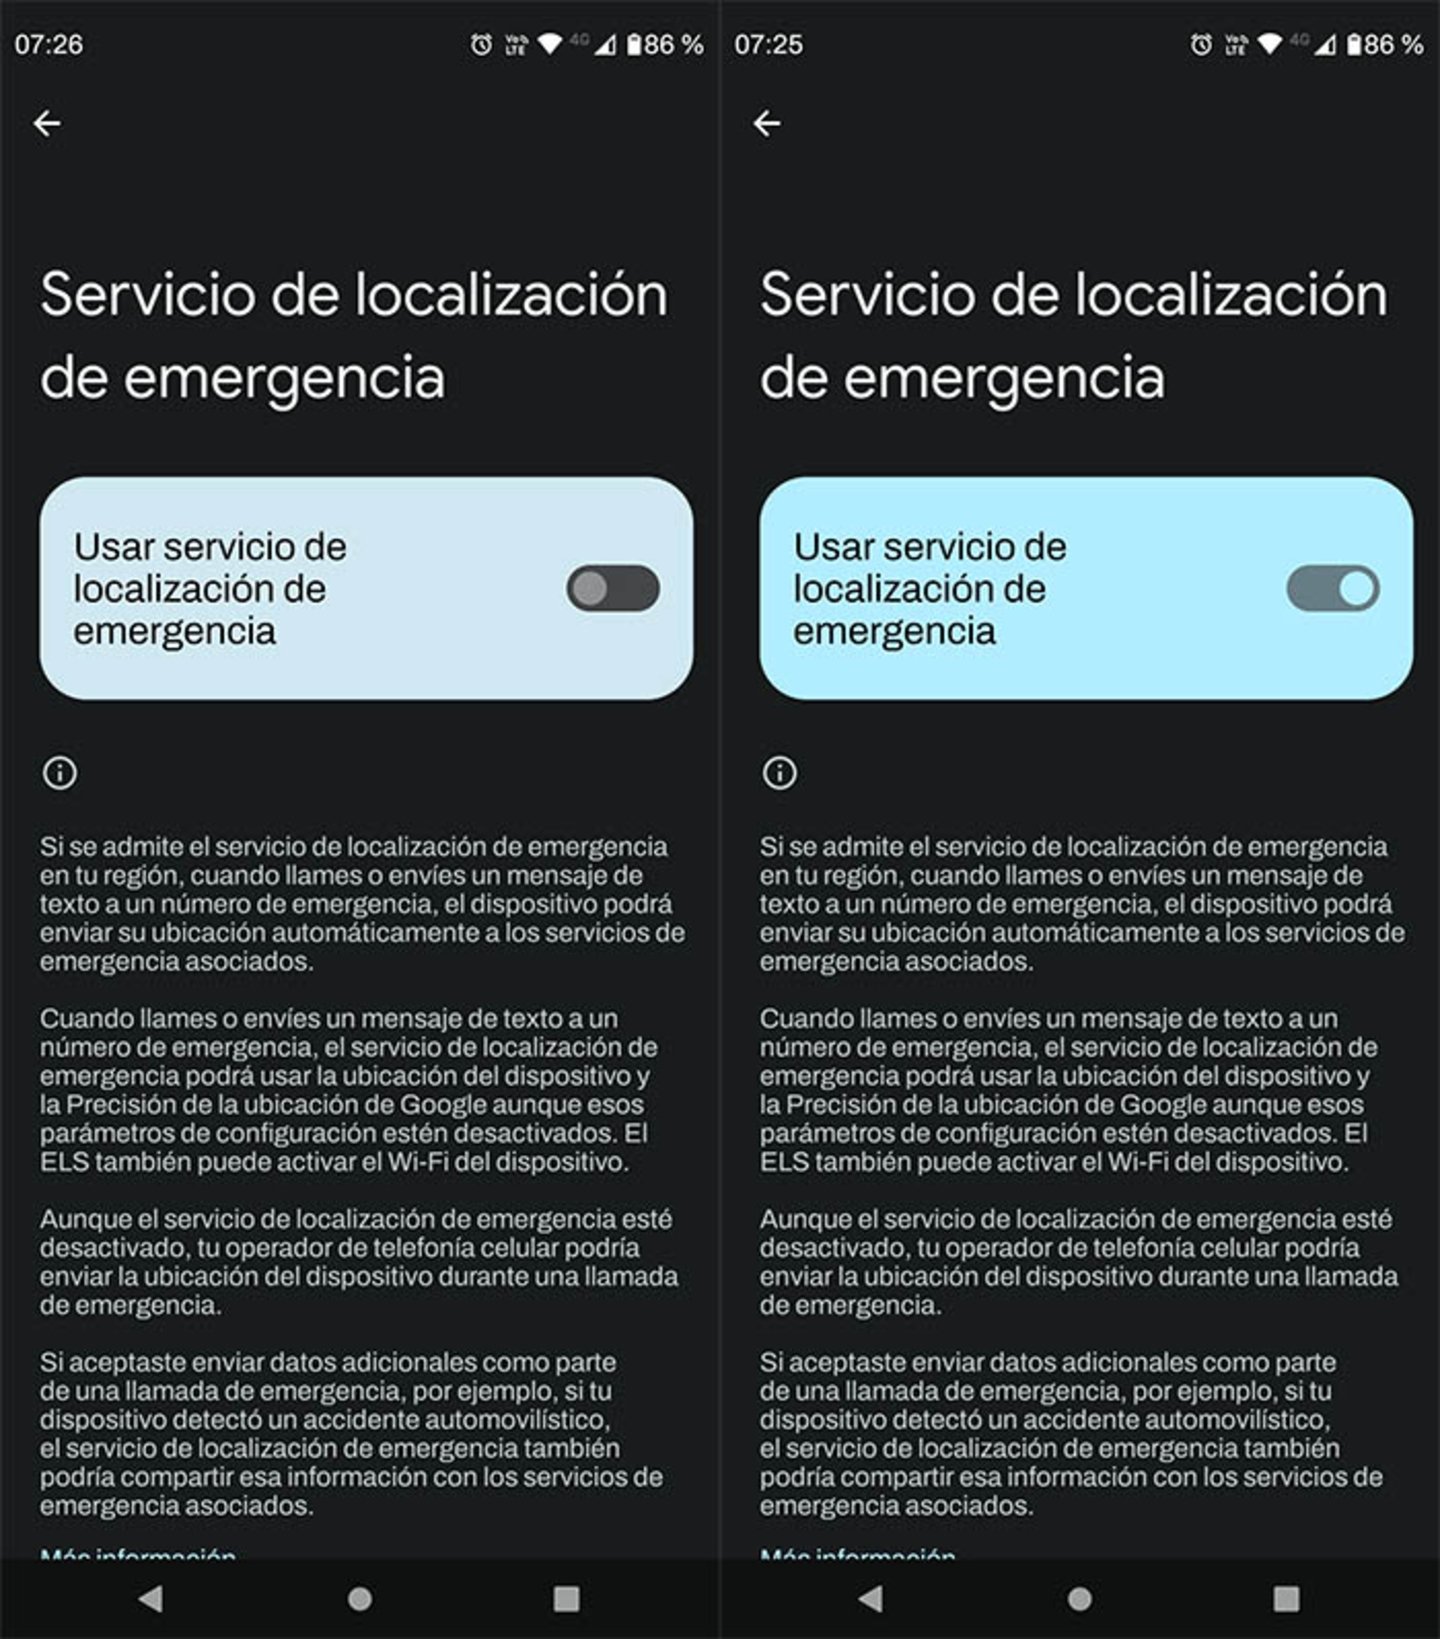 Servicios de localizació de emergencias